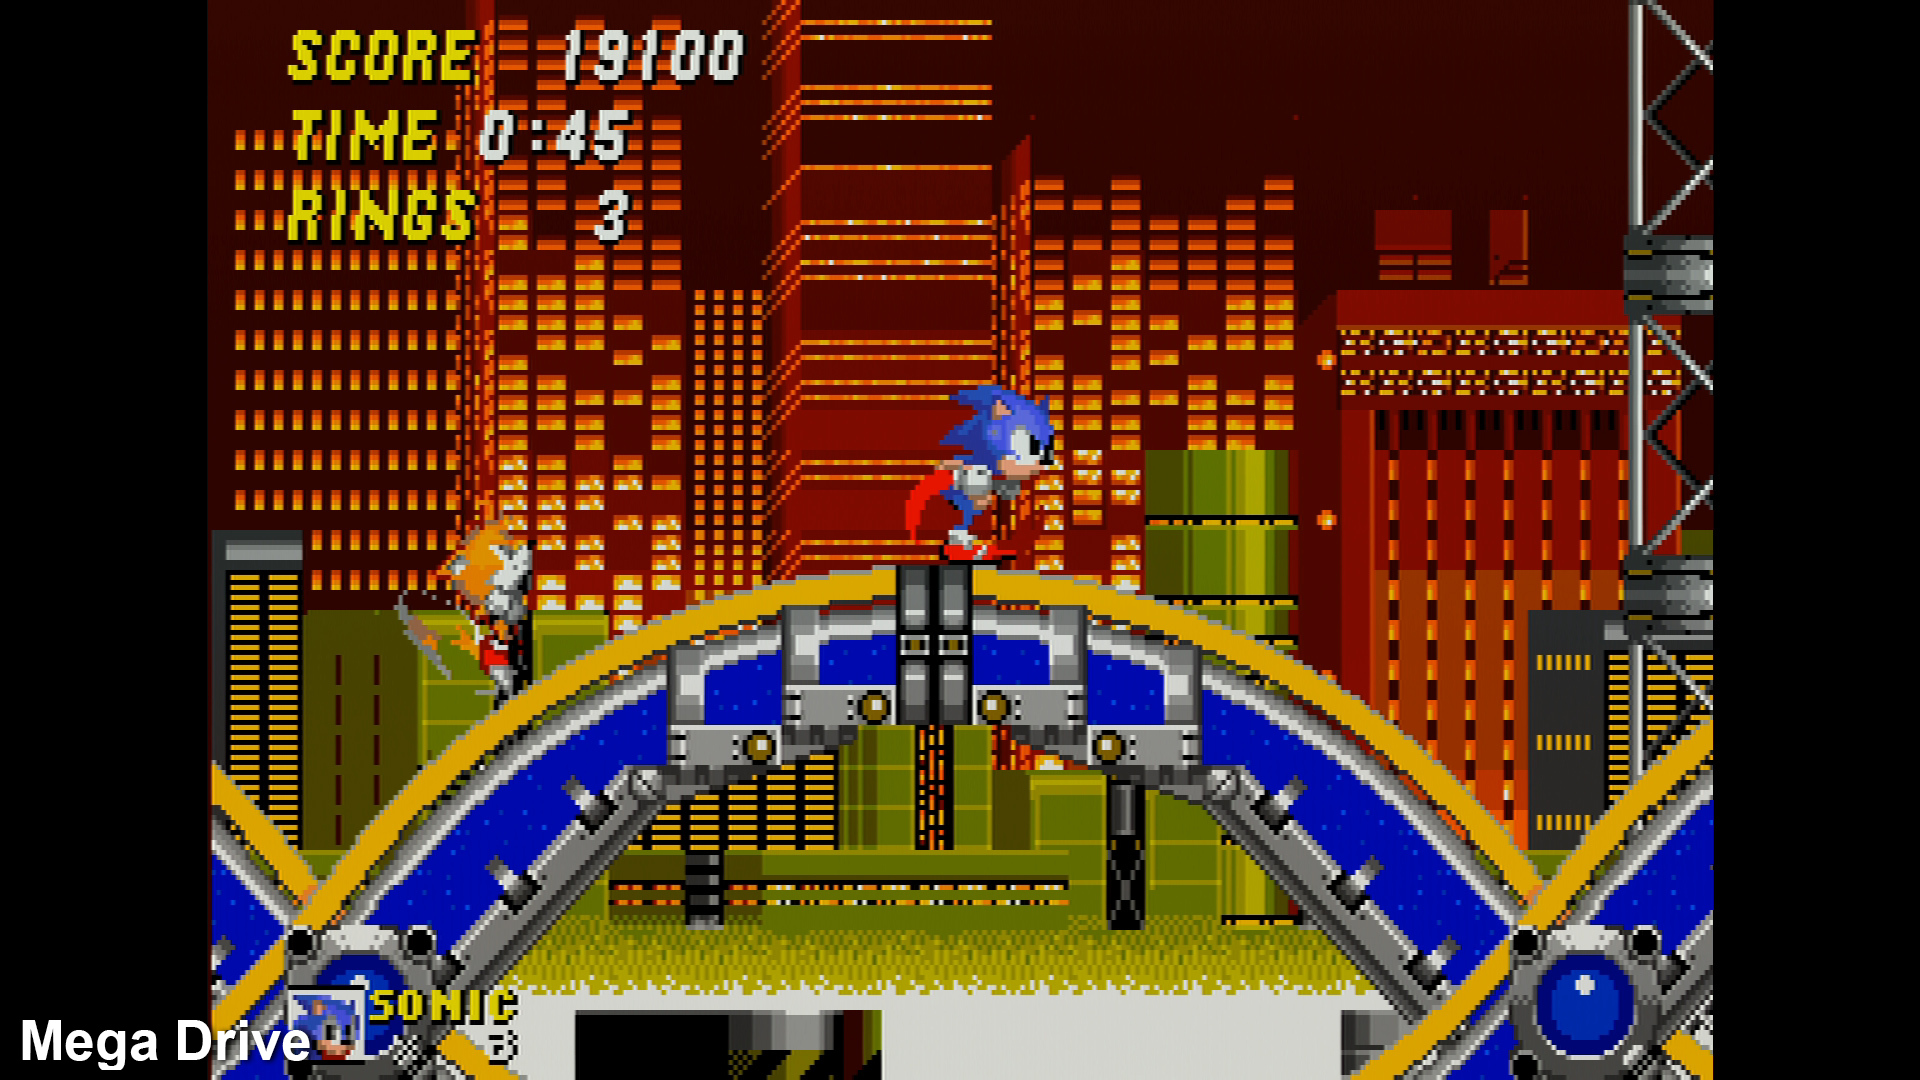 Digital Foundry - Sonic Mania é a sequela pela qual esperamos 23